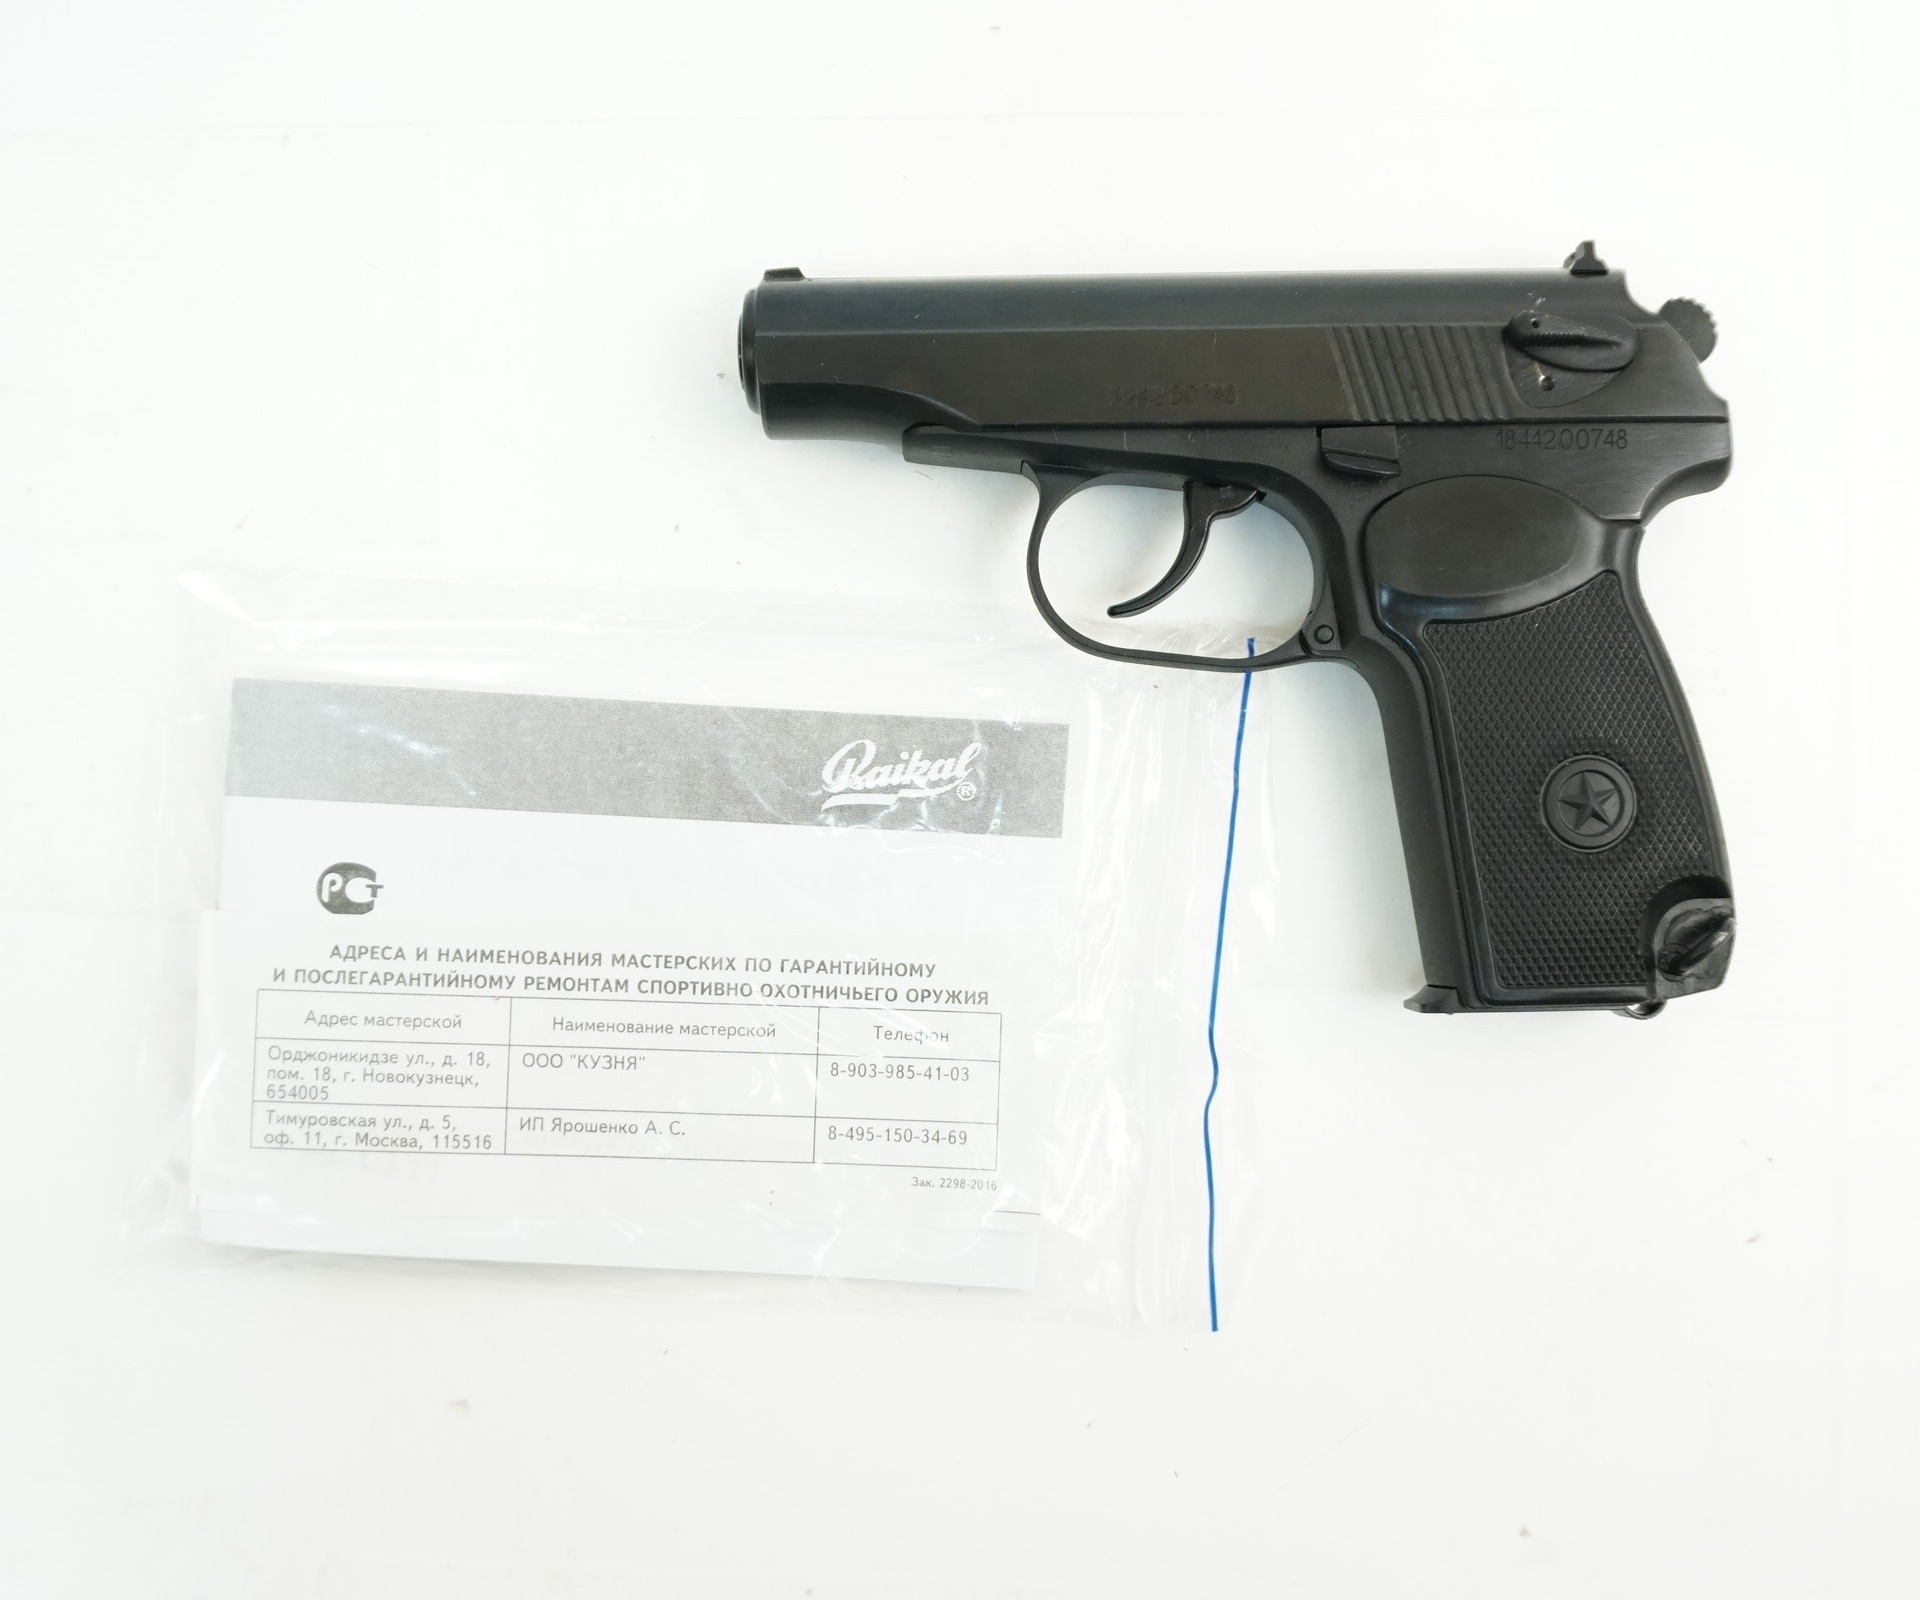 Оружие списанное, охолощенное "Р-411-01" (Макаров), к.10ТК